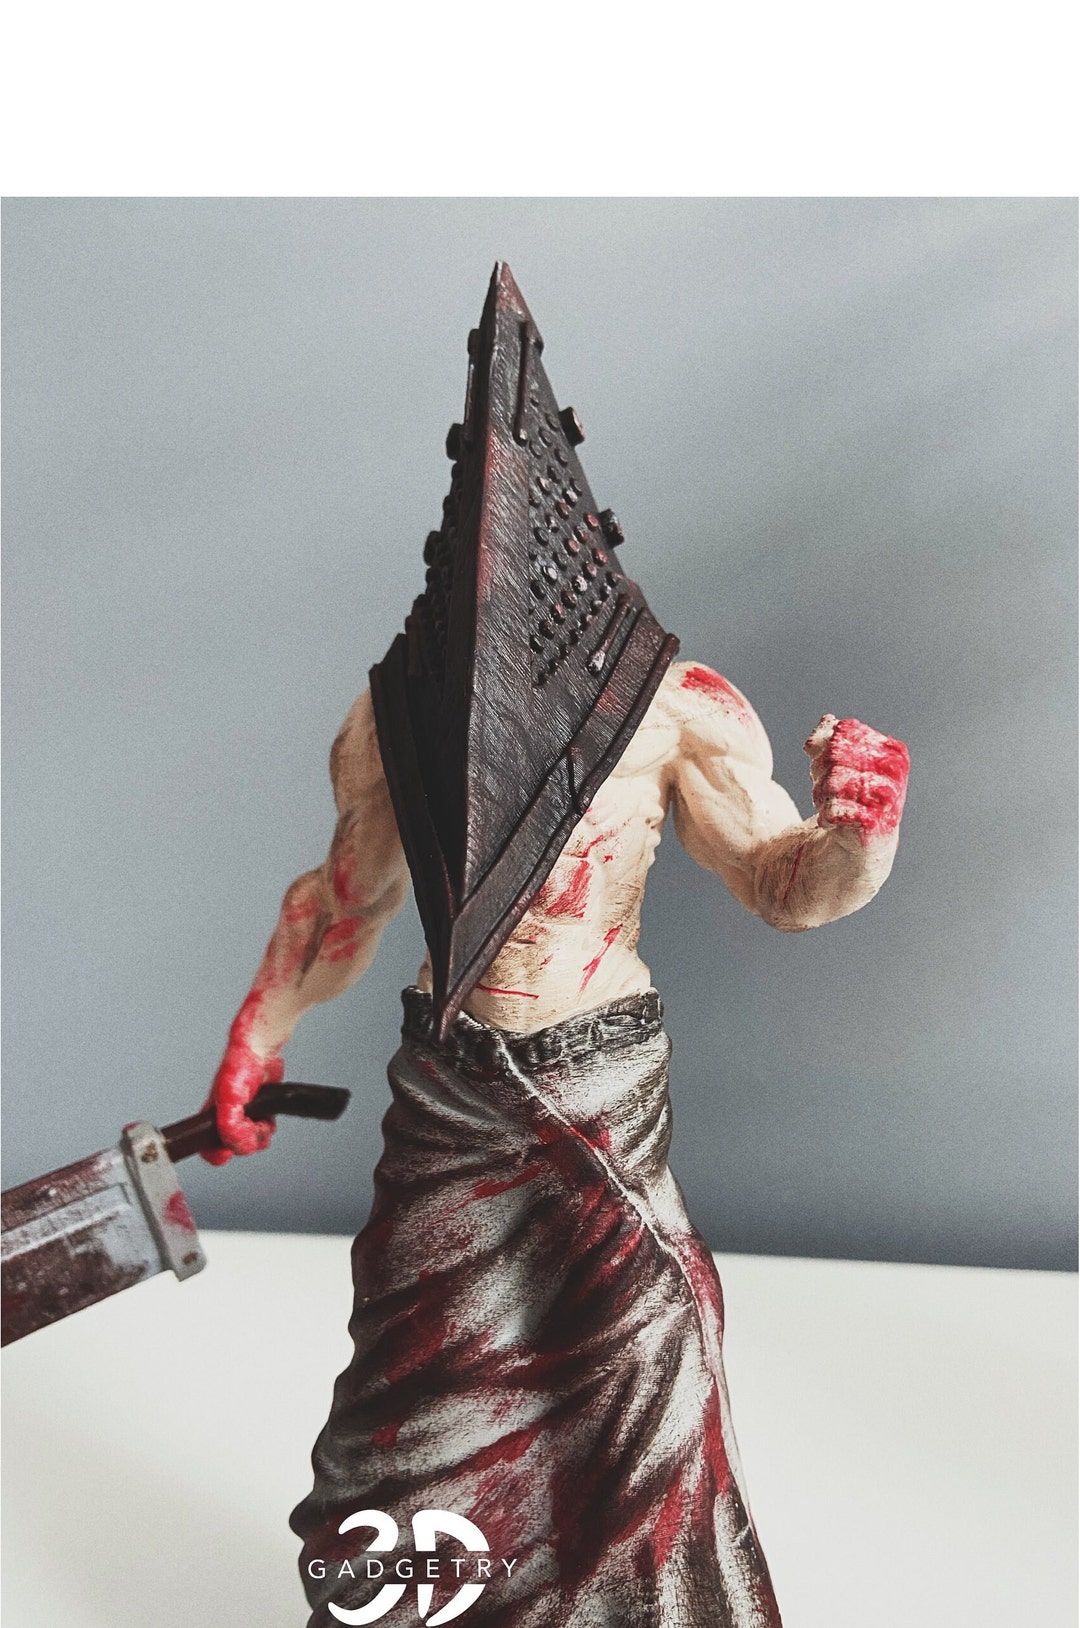 Boneco do Silent Hill - Estátua do Pyramid Head ( Cabeça de Pirâmide ) -  Arte em Miniaturas